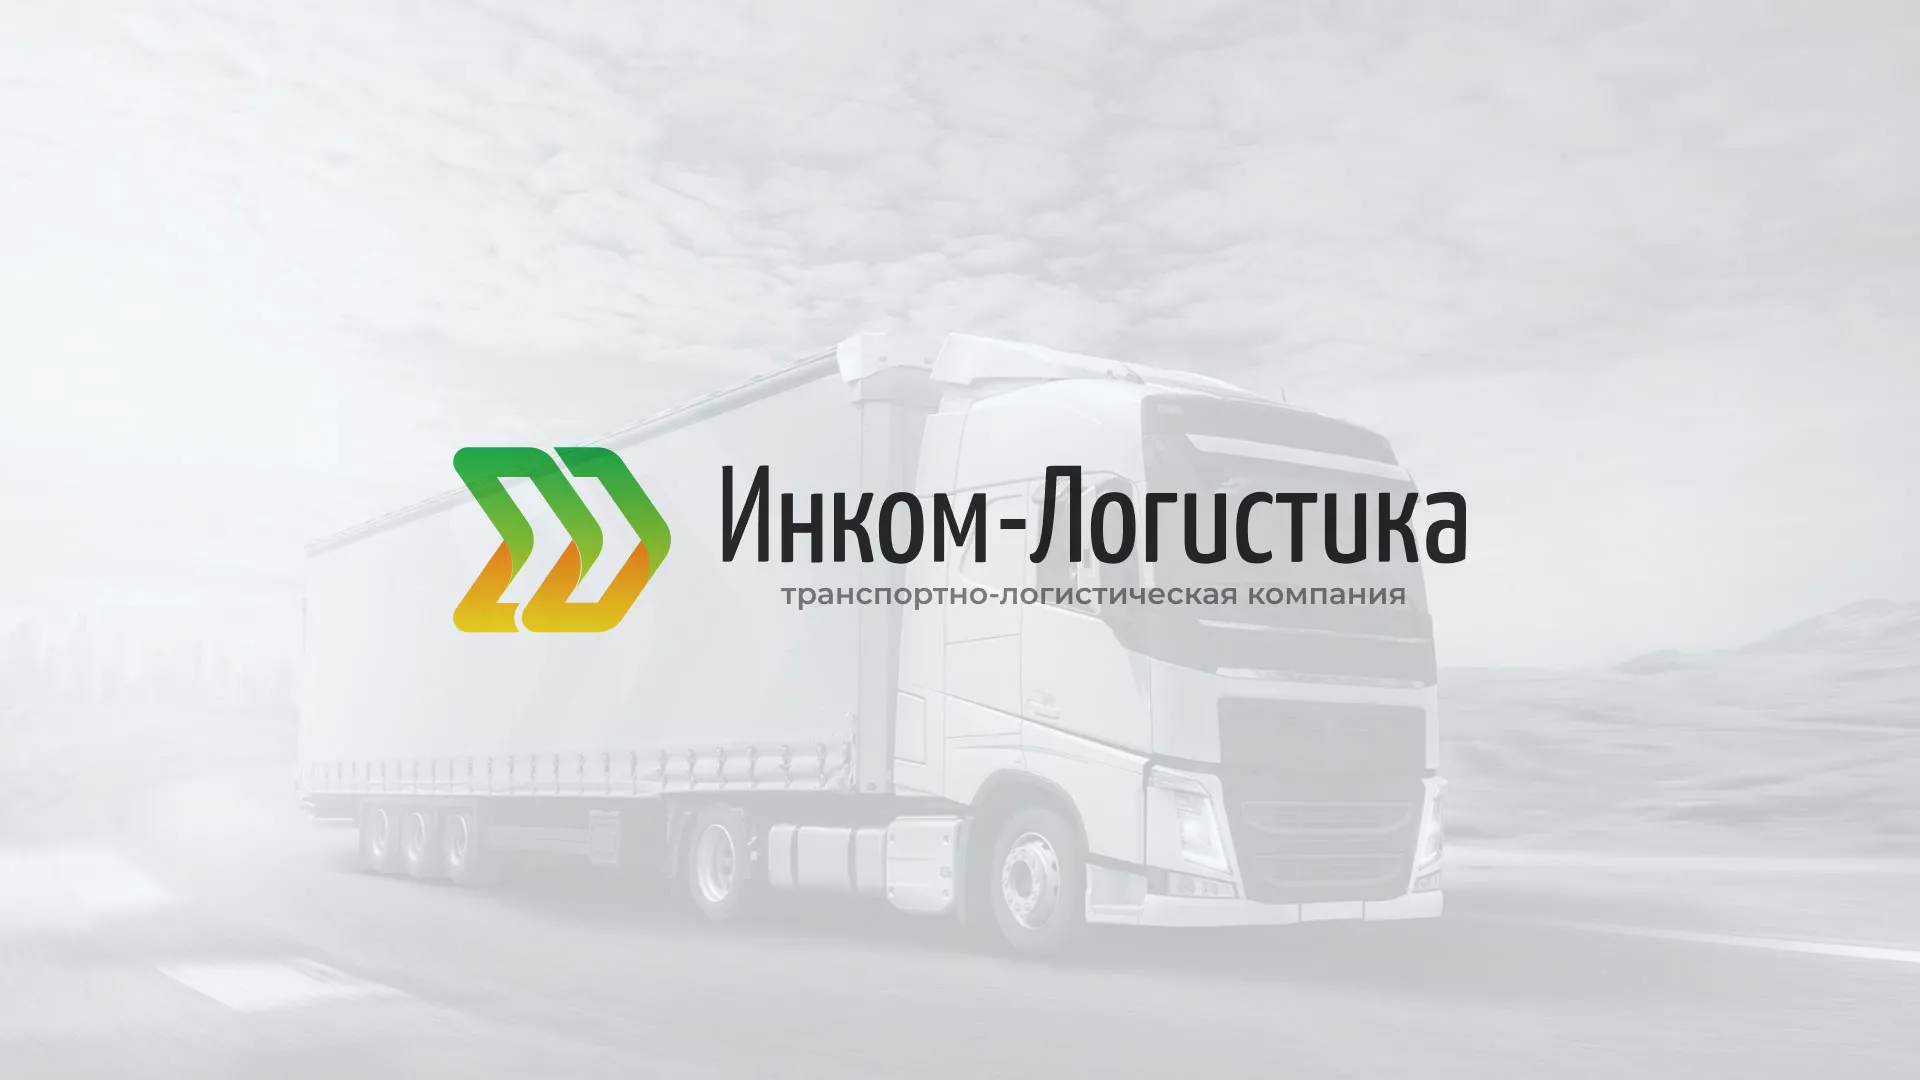 Разработка логотипа и сайта компании «Инком-Логистика» в Славянске-на-Кубани